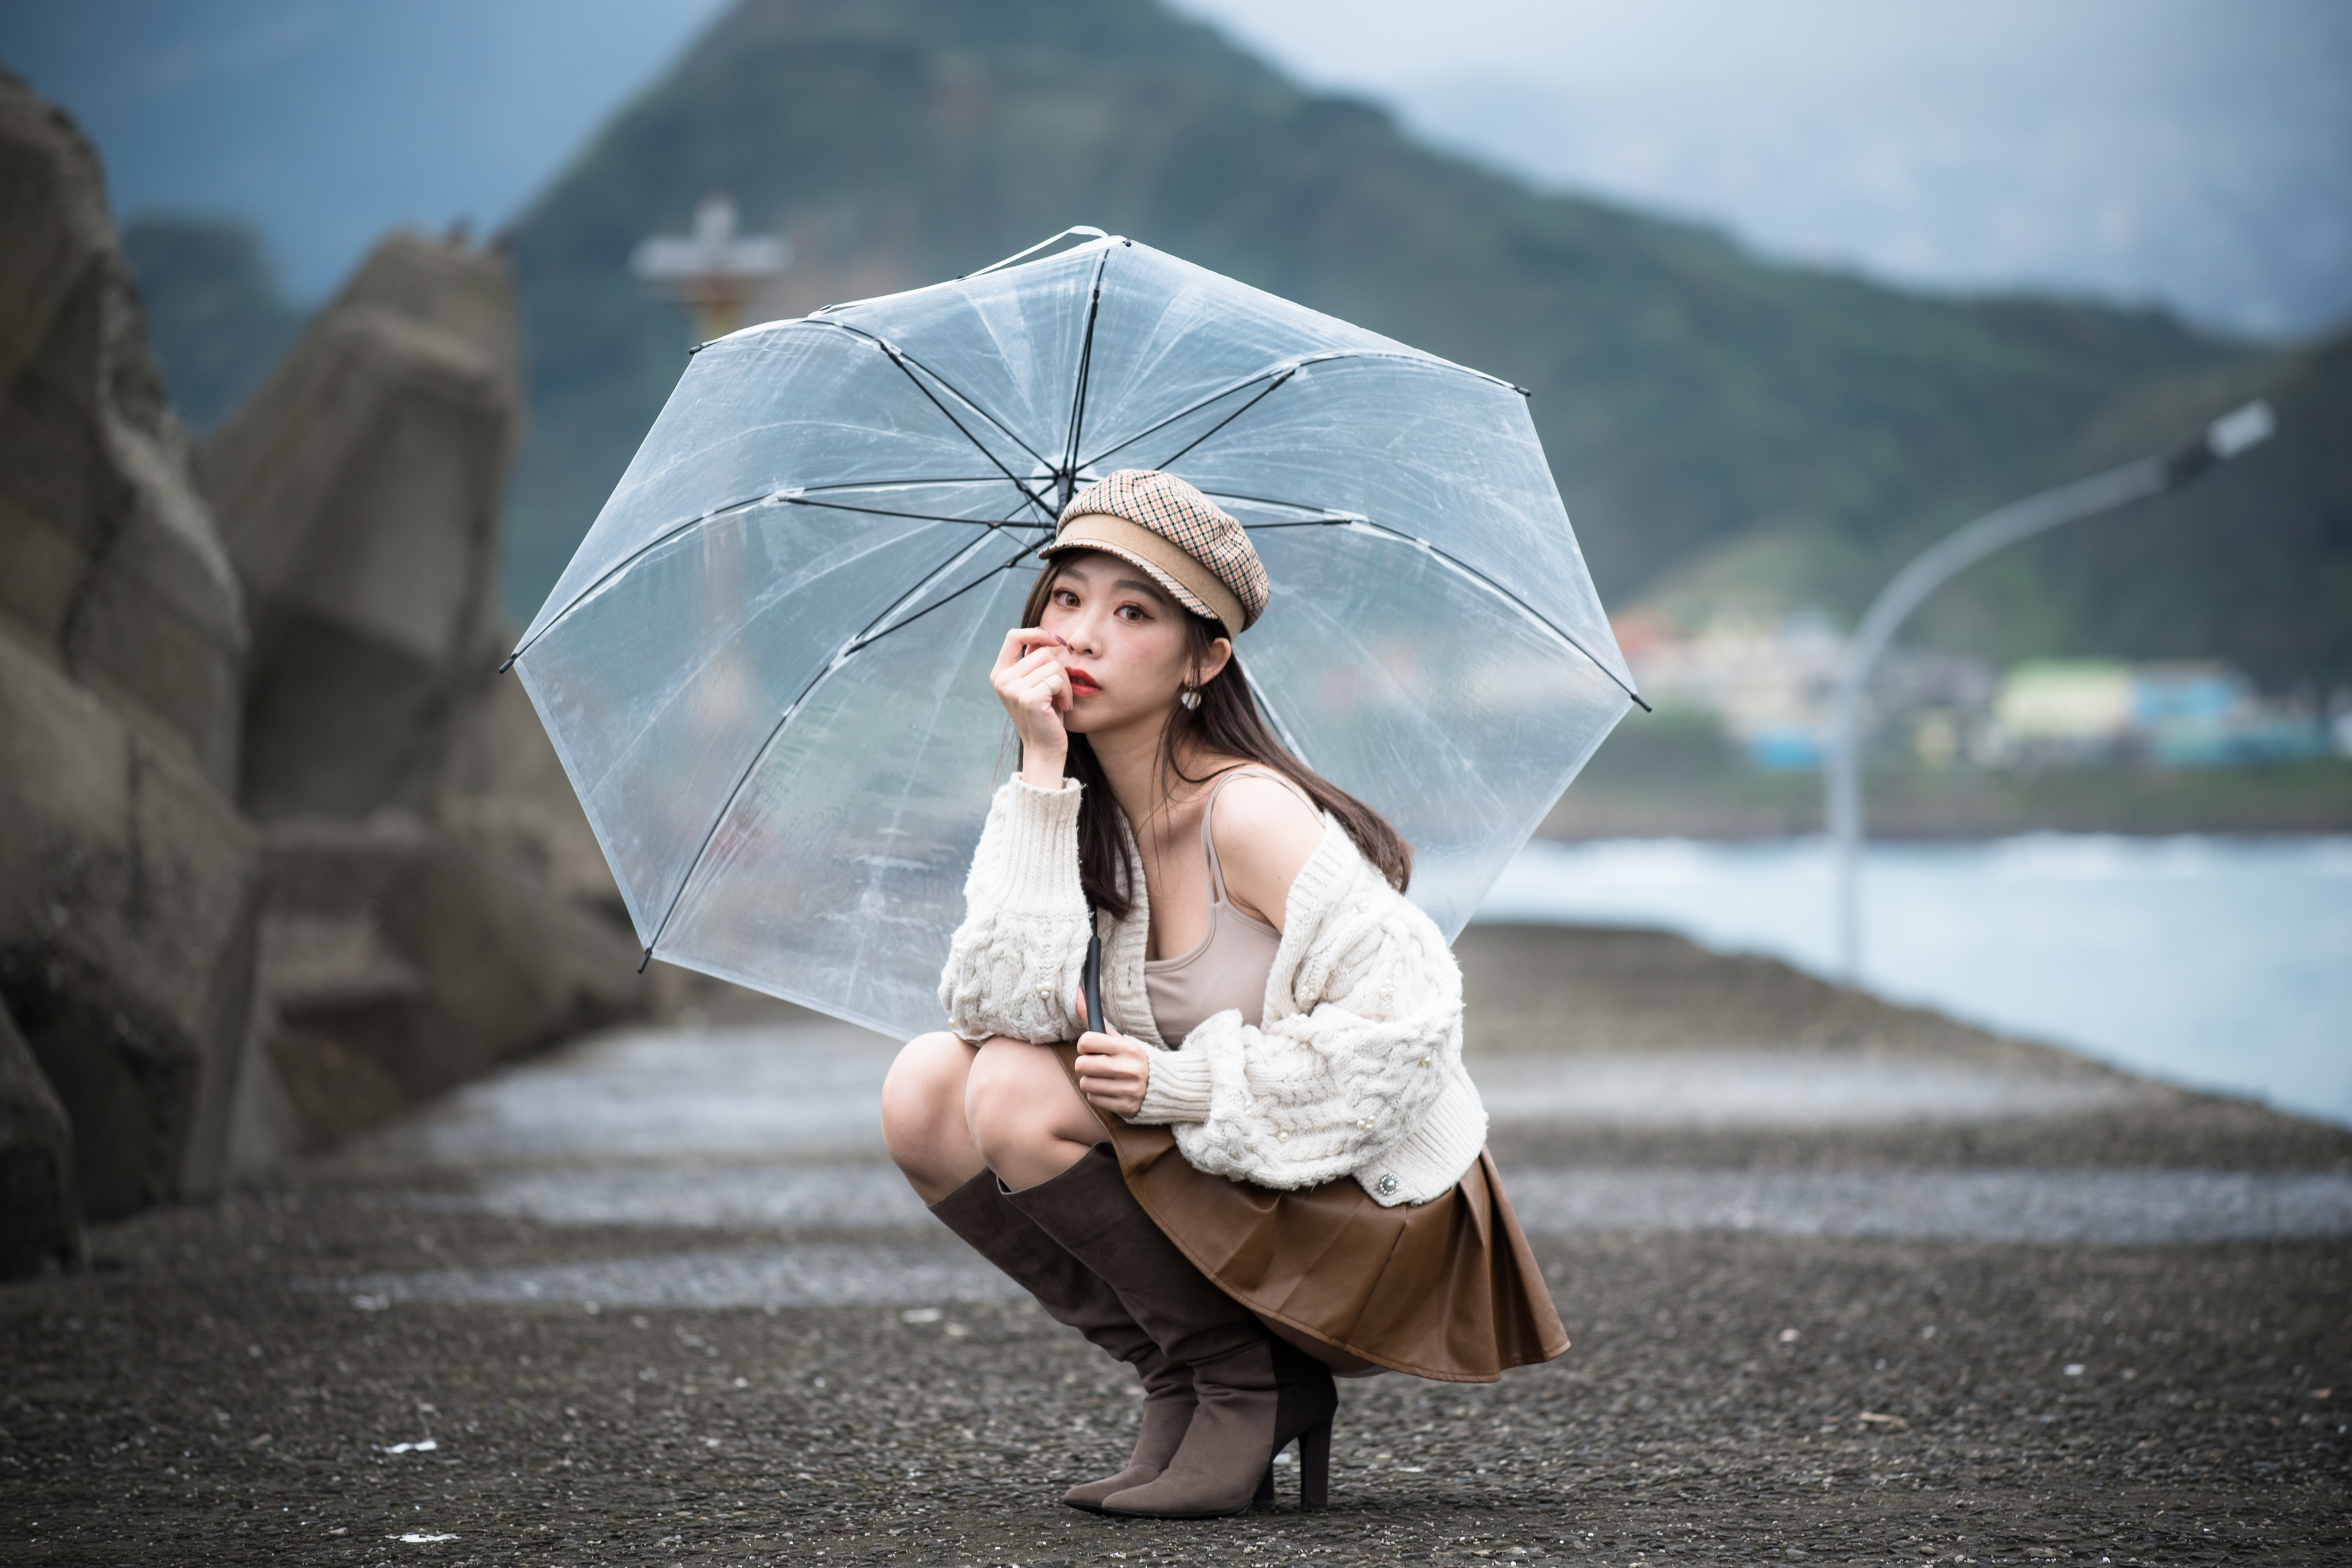 Asian Model Women Long Hair Dark Hair Hat Umbrella Skirt Depth Of Field Mountains Boots Wool Jacket  3840x2560